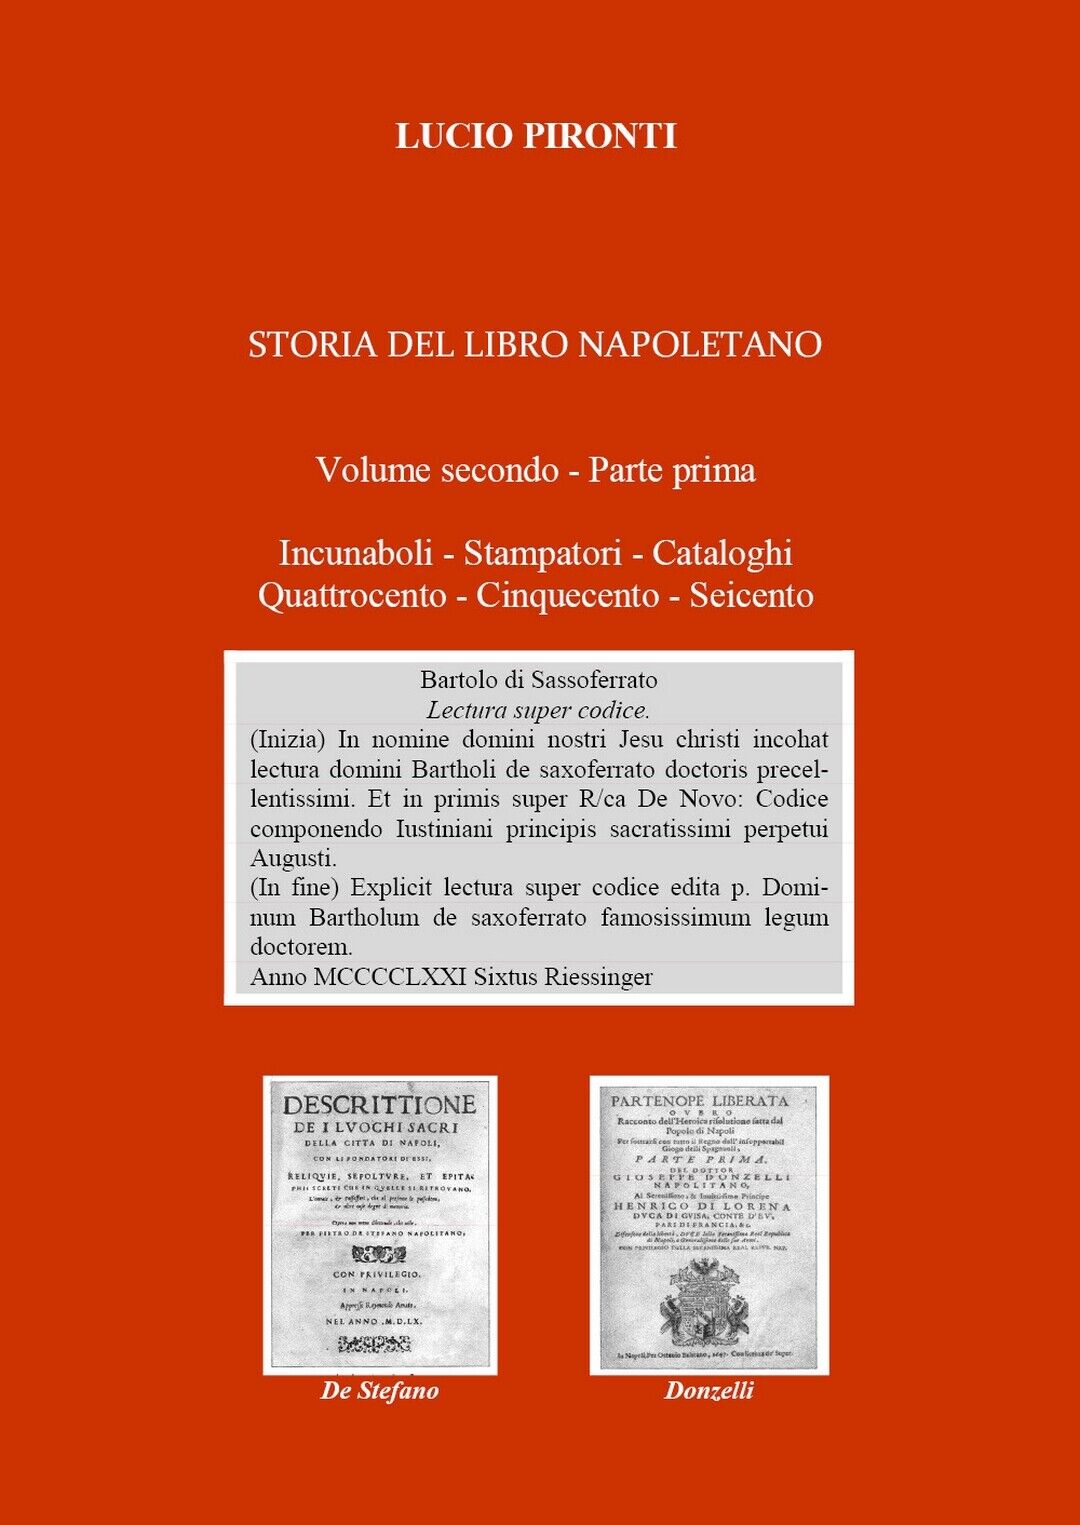 Storia del libro napoletano. Volume secondo - Parte prima. Incunaboli - Stampato